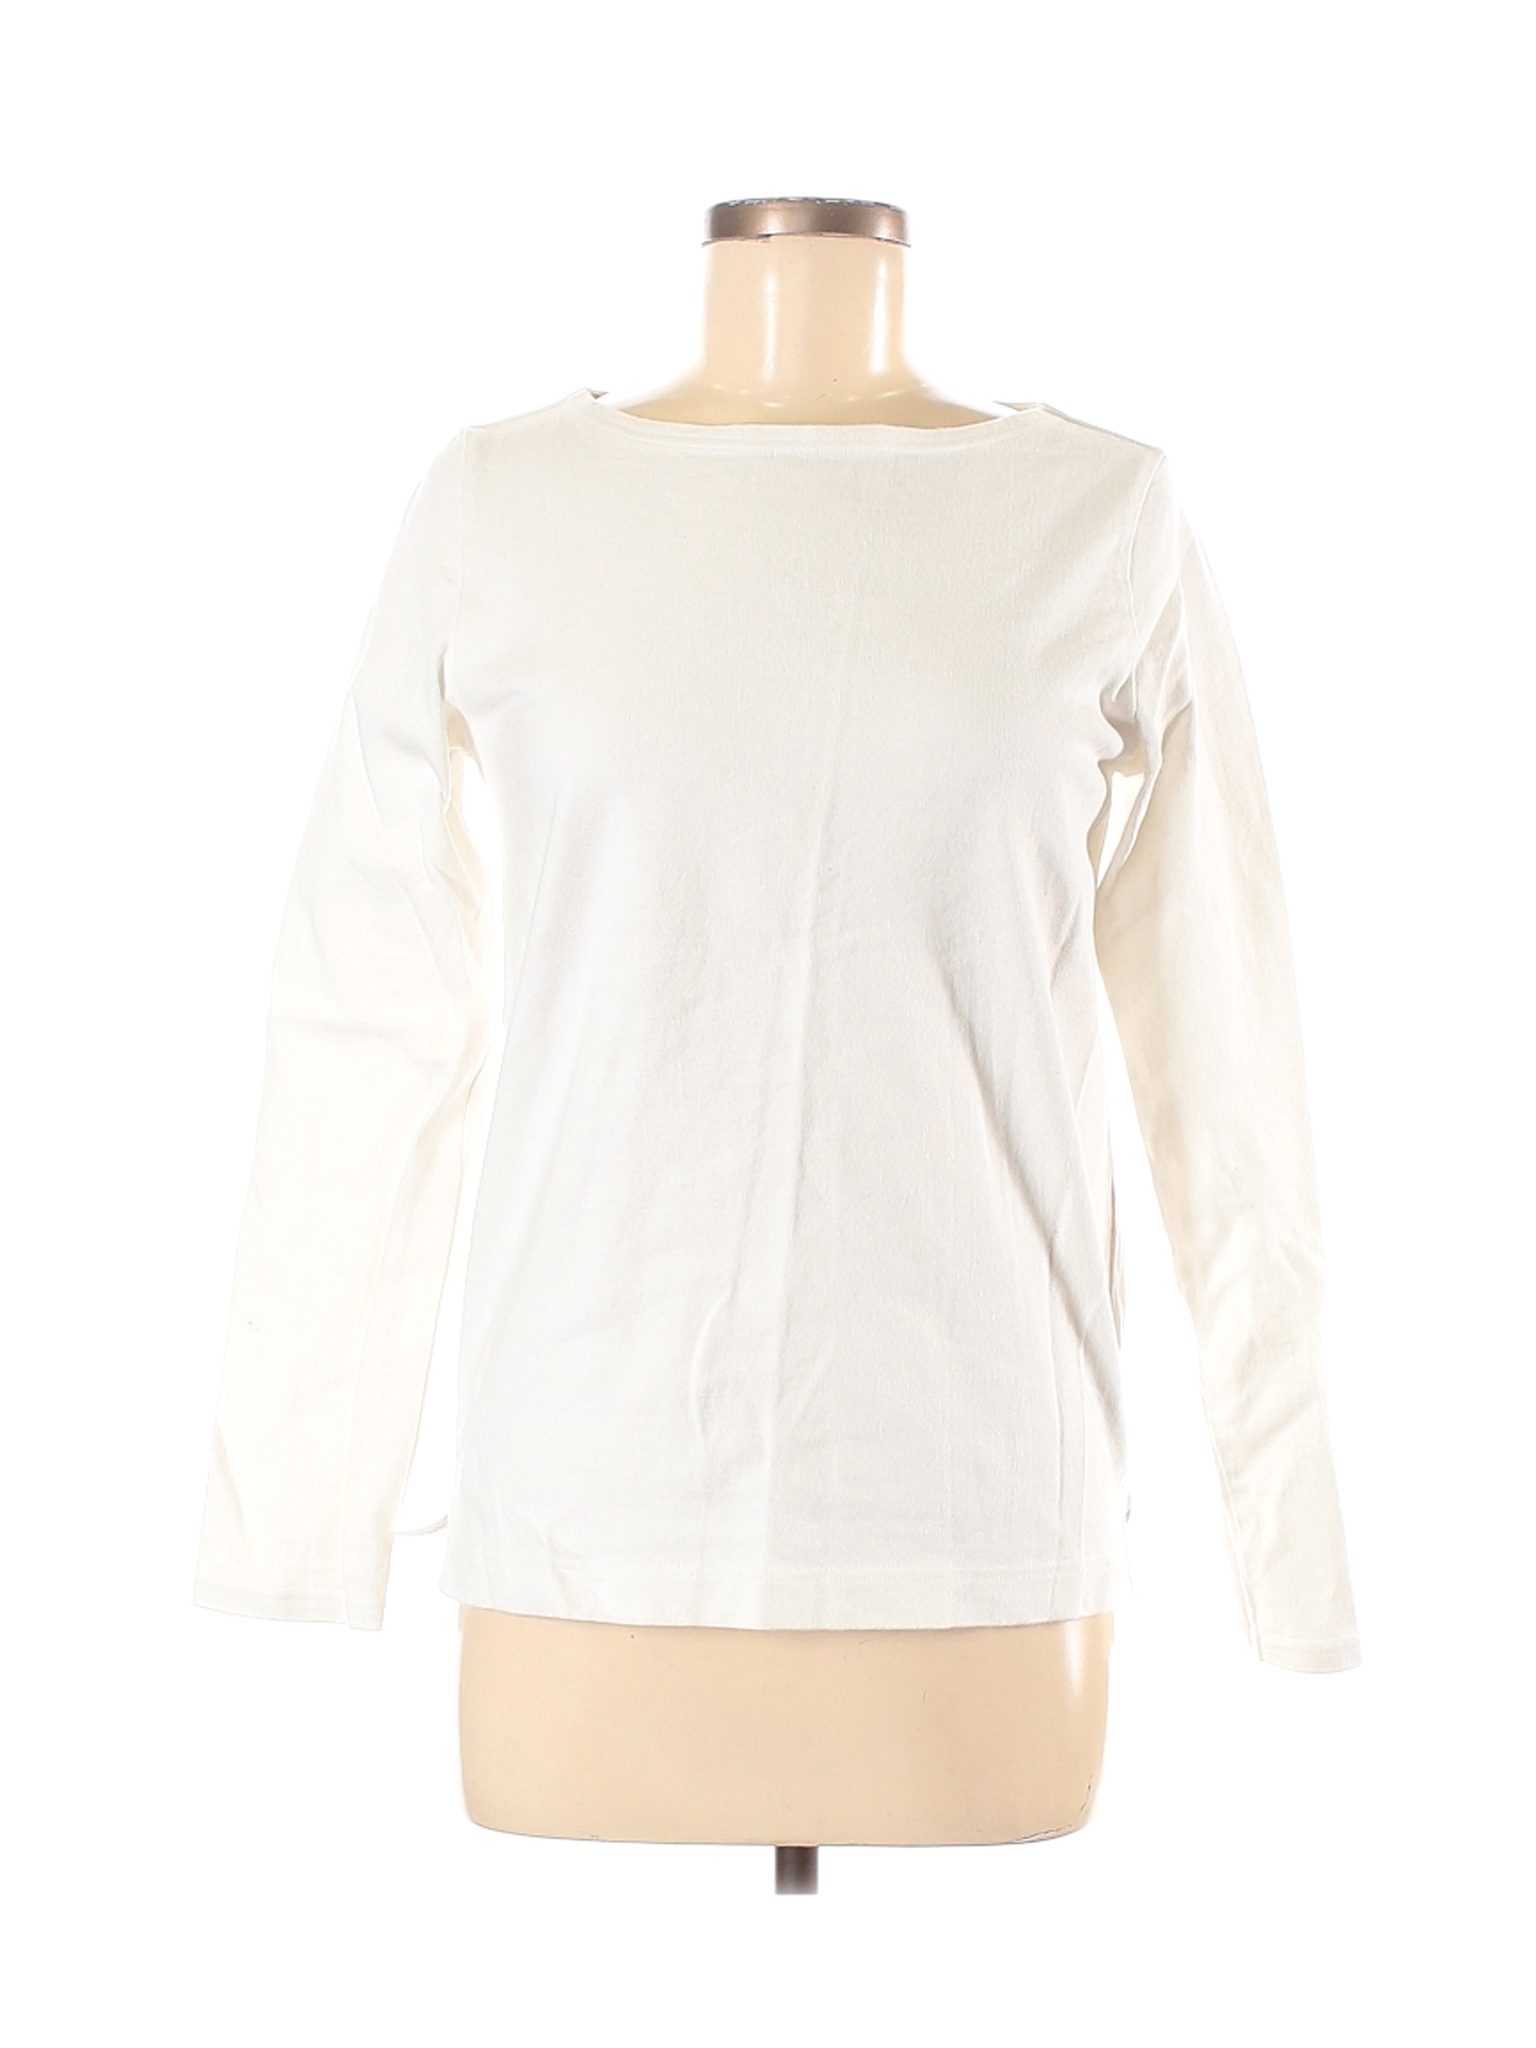 Unbranded Women White Long Sleeve T-Shirt M | eBay